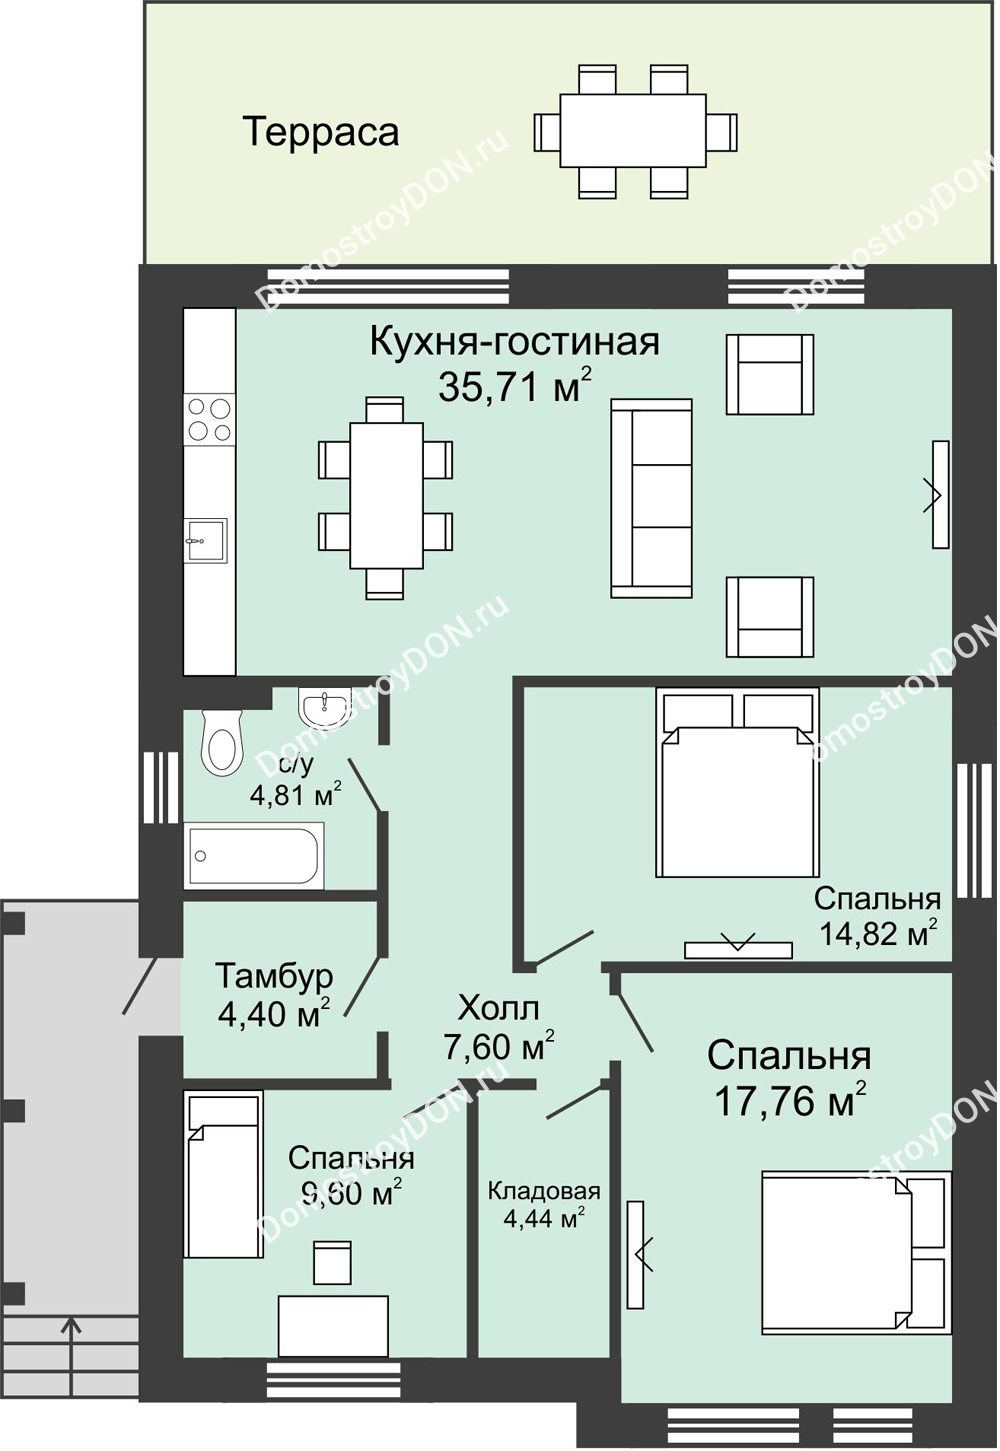 Планировка 1 этажа в доме коттедж 100 м² в КП Донской